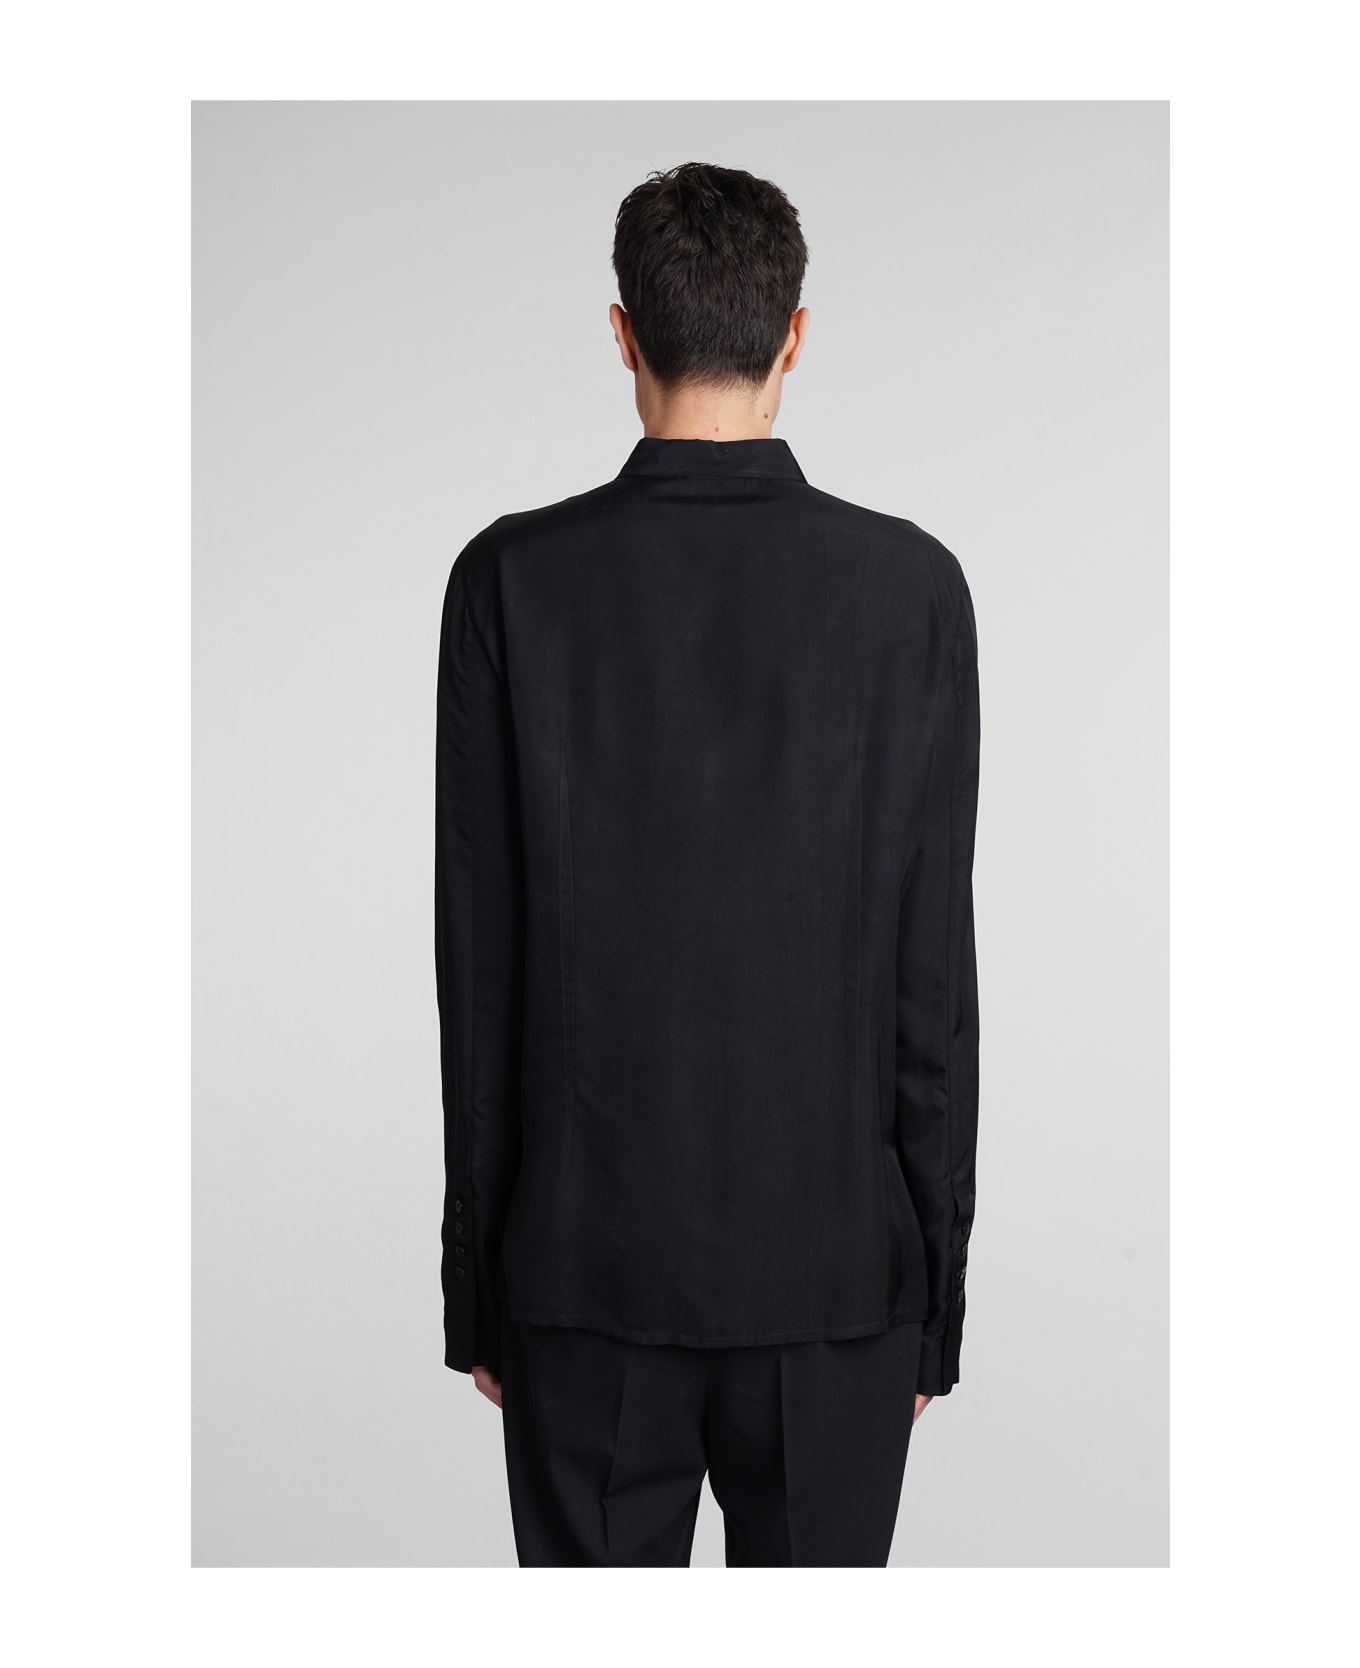 Sapio N16 Shirt In Black Polyamide Polyester - black シャツ